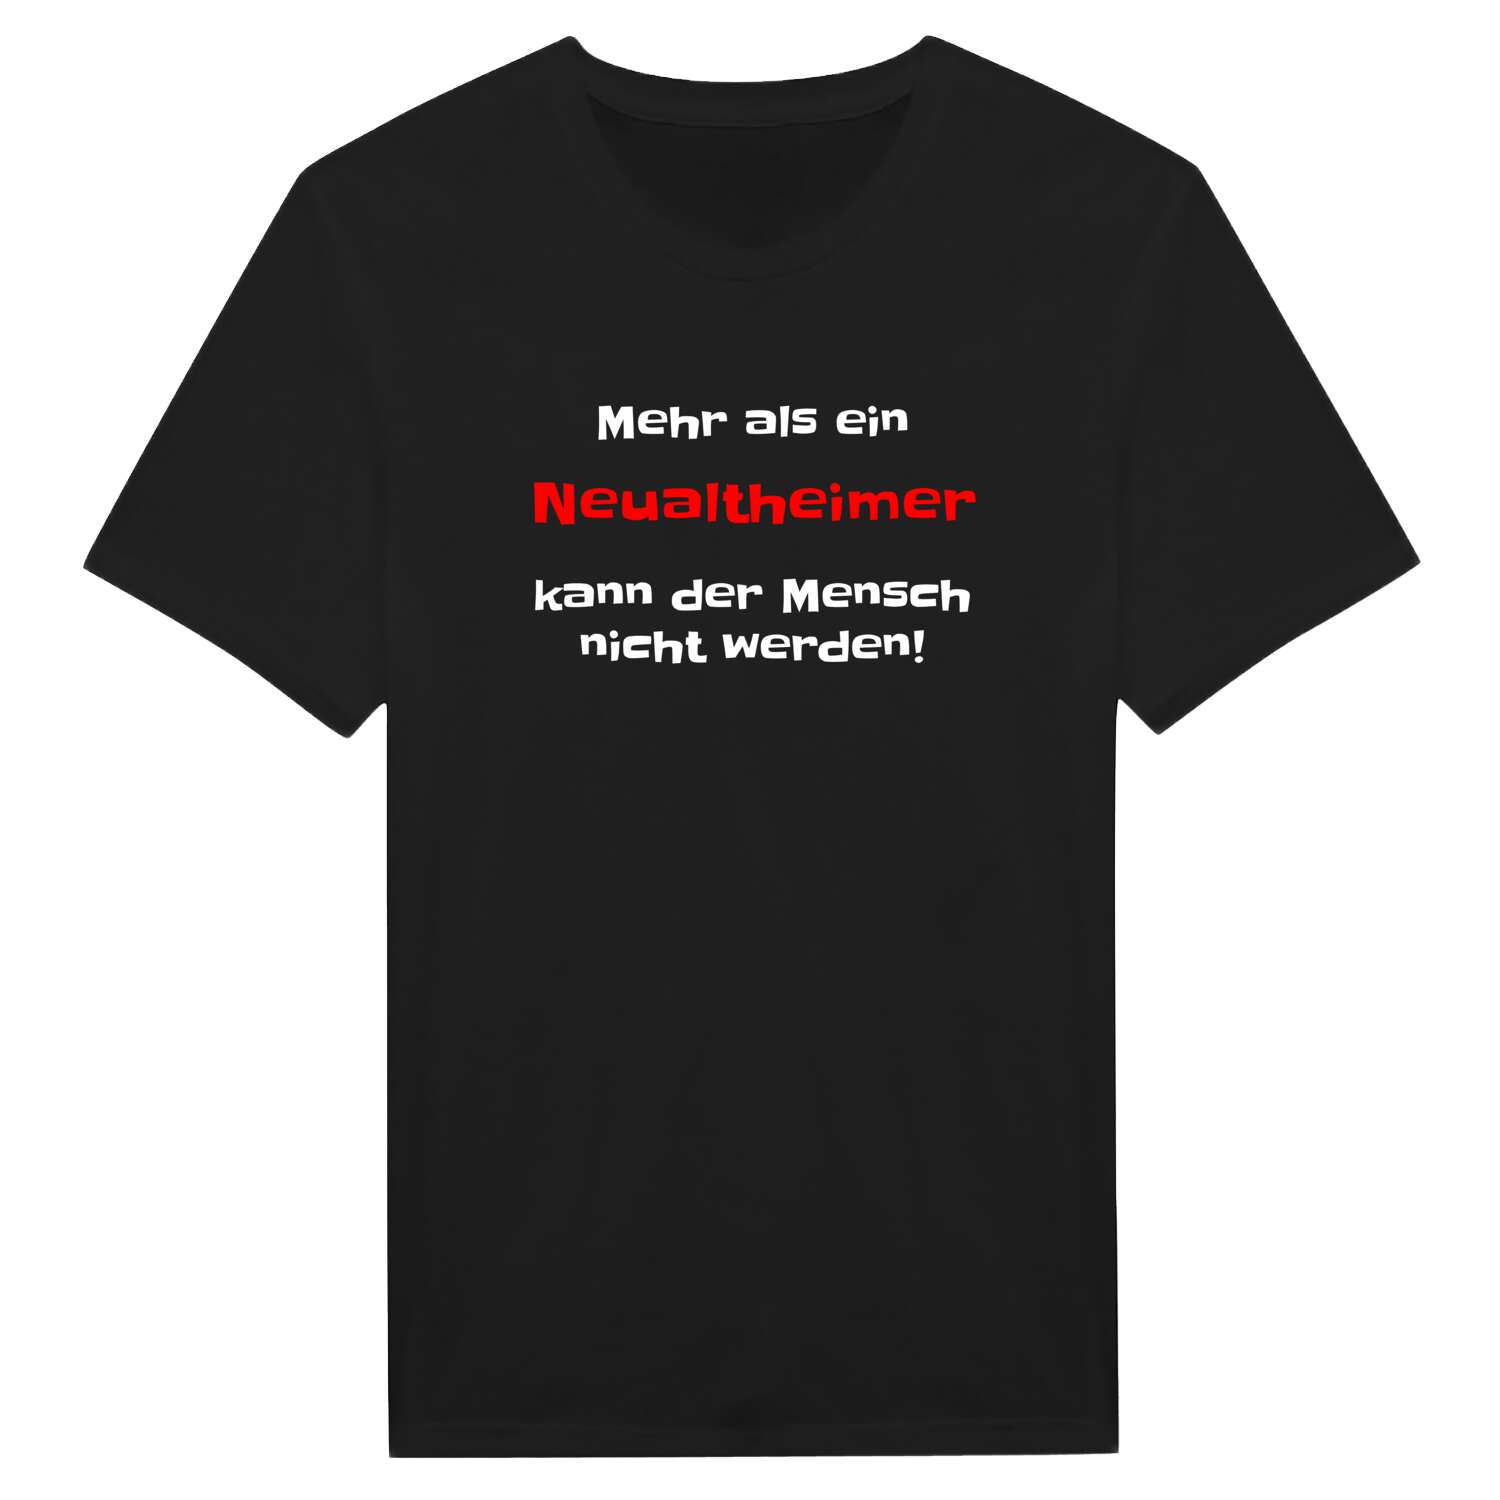 Neualtheim T-Shirt »Mehr als ein«